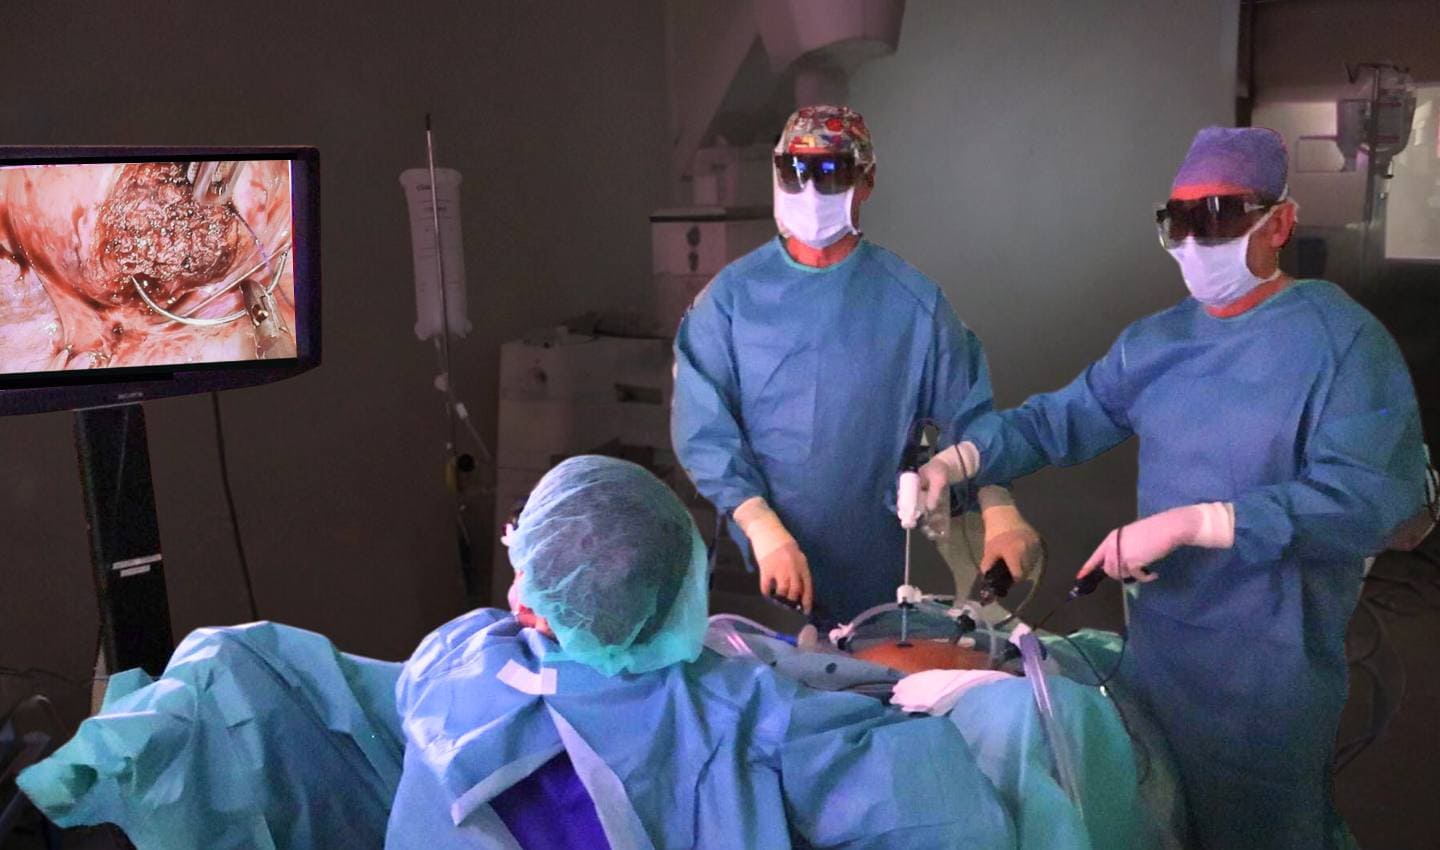 tratamiento miomas uterinos cirugía laparoscopia